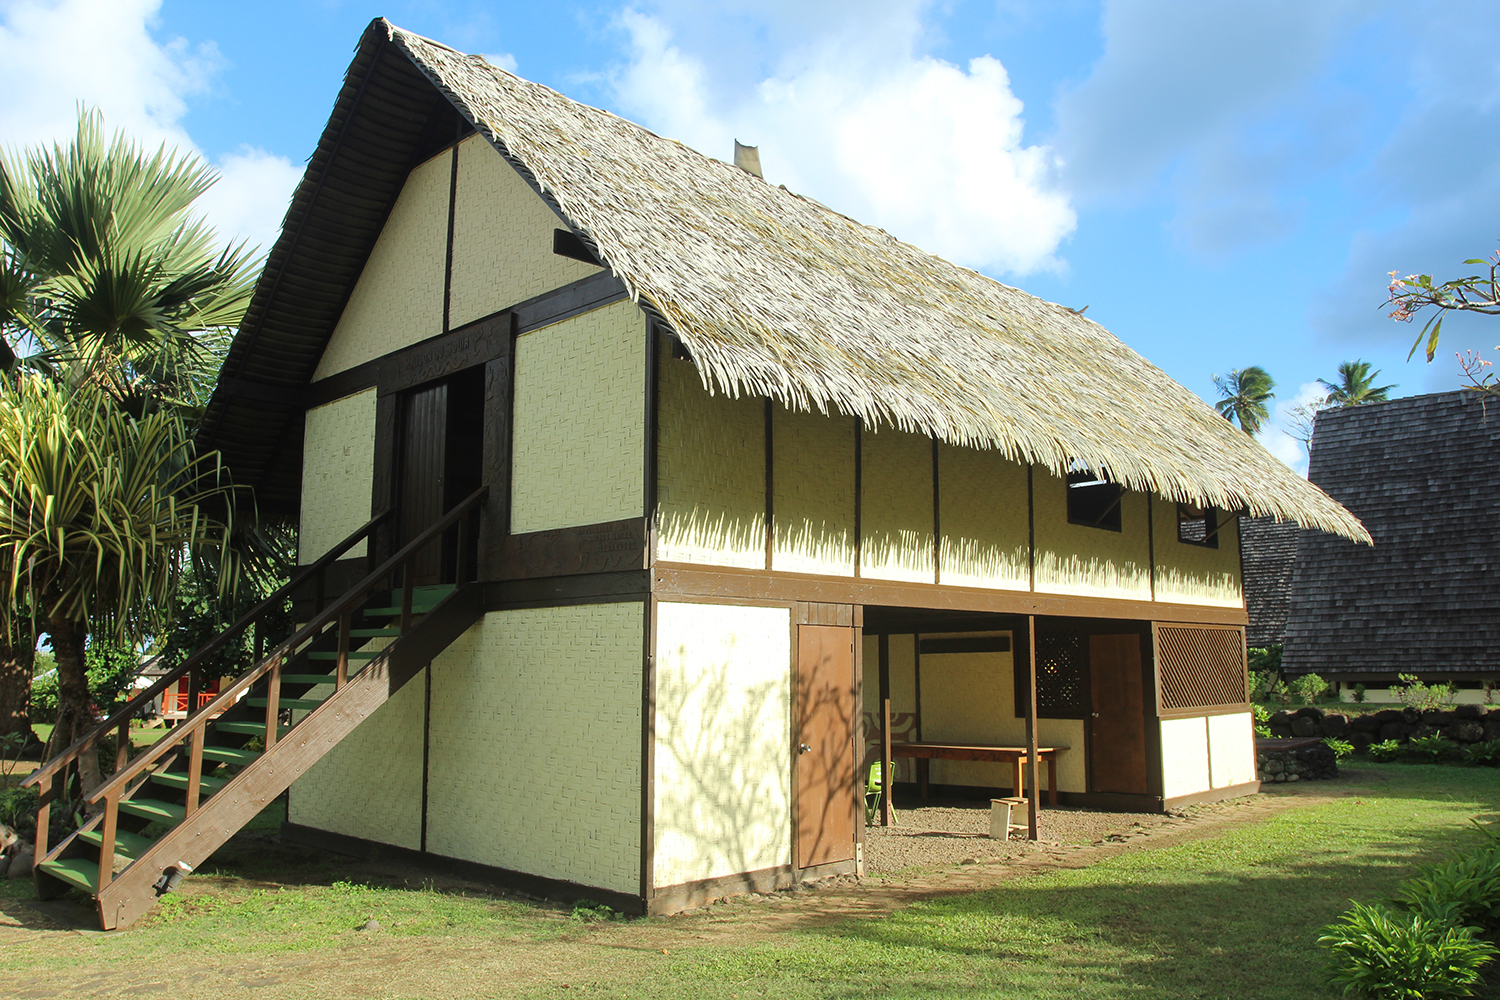 La reconstitution de la “Maison du Jouir” où Gauguin peignit parmi ses plus grands chefs-d’œuvre.